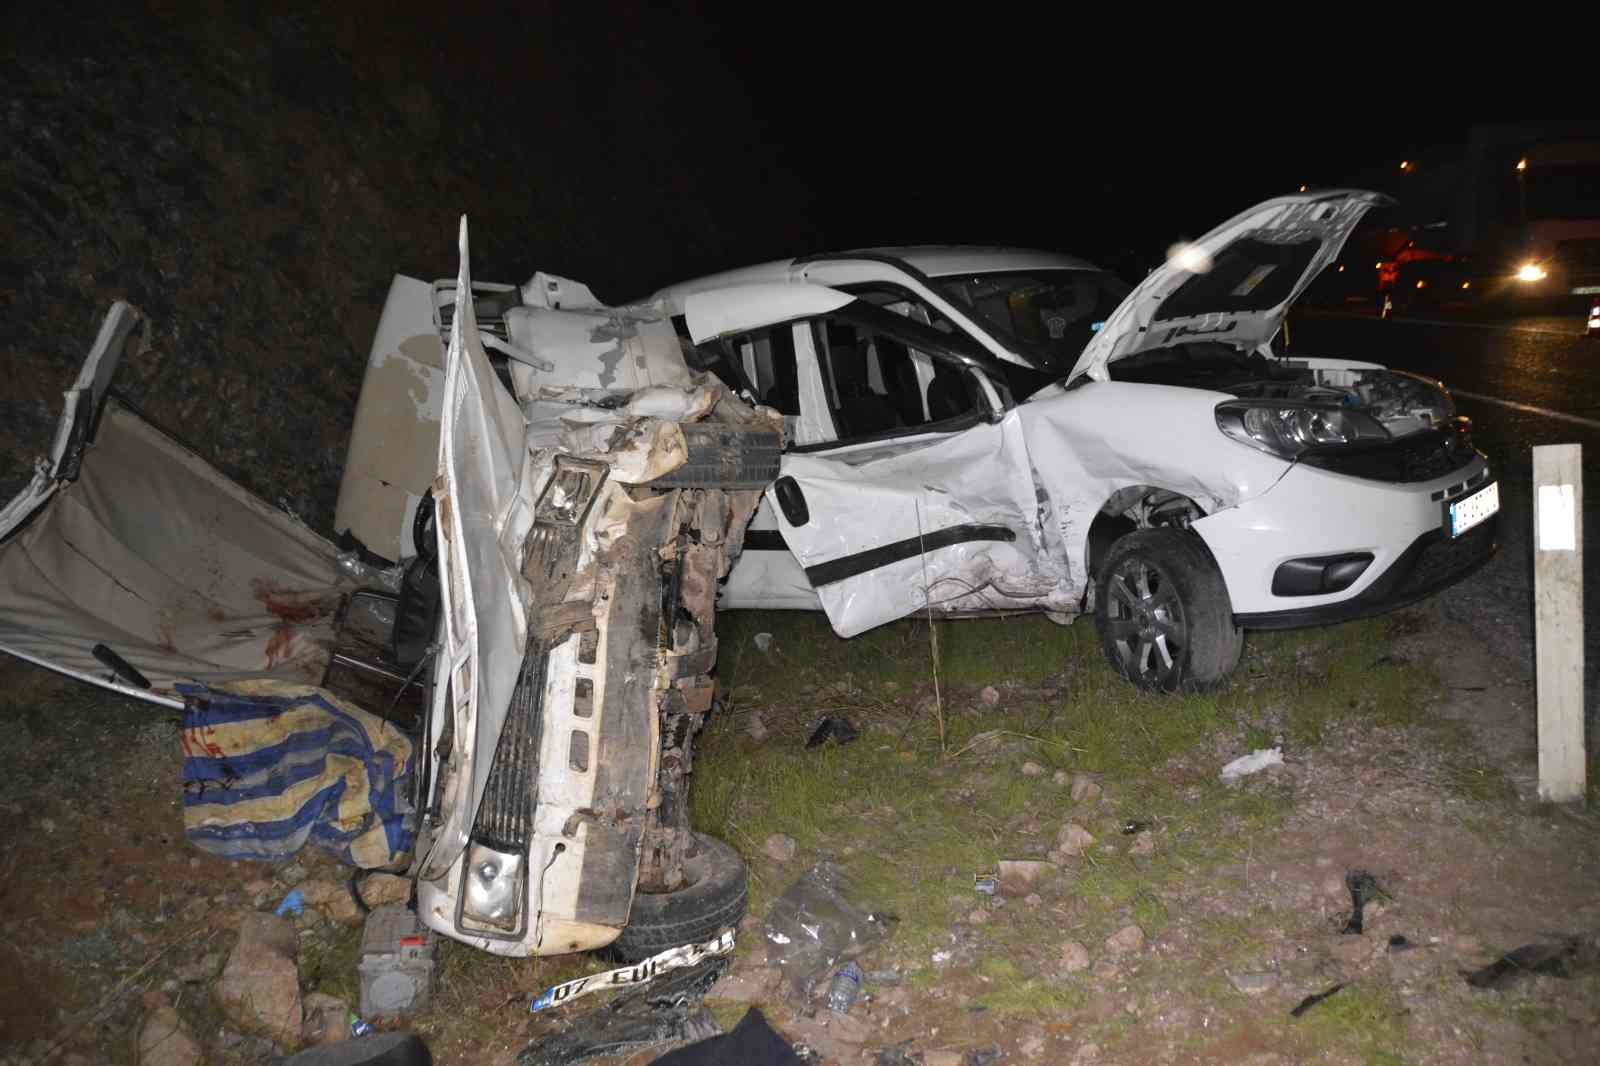 Muğla’da trafik kazası: 1 ölü, 3 yaralı #mugla